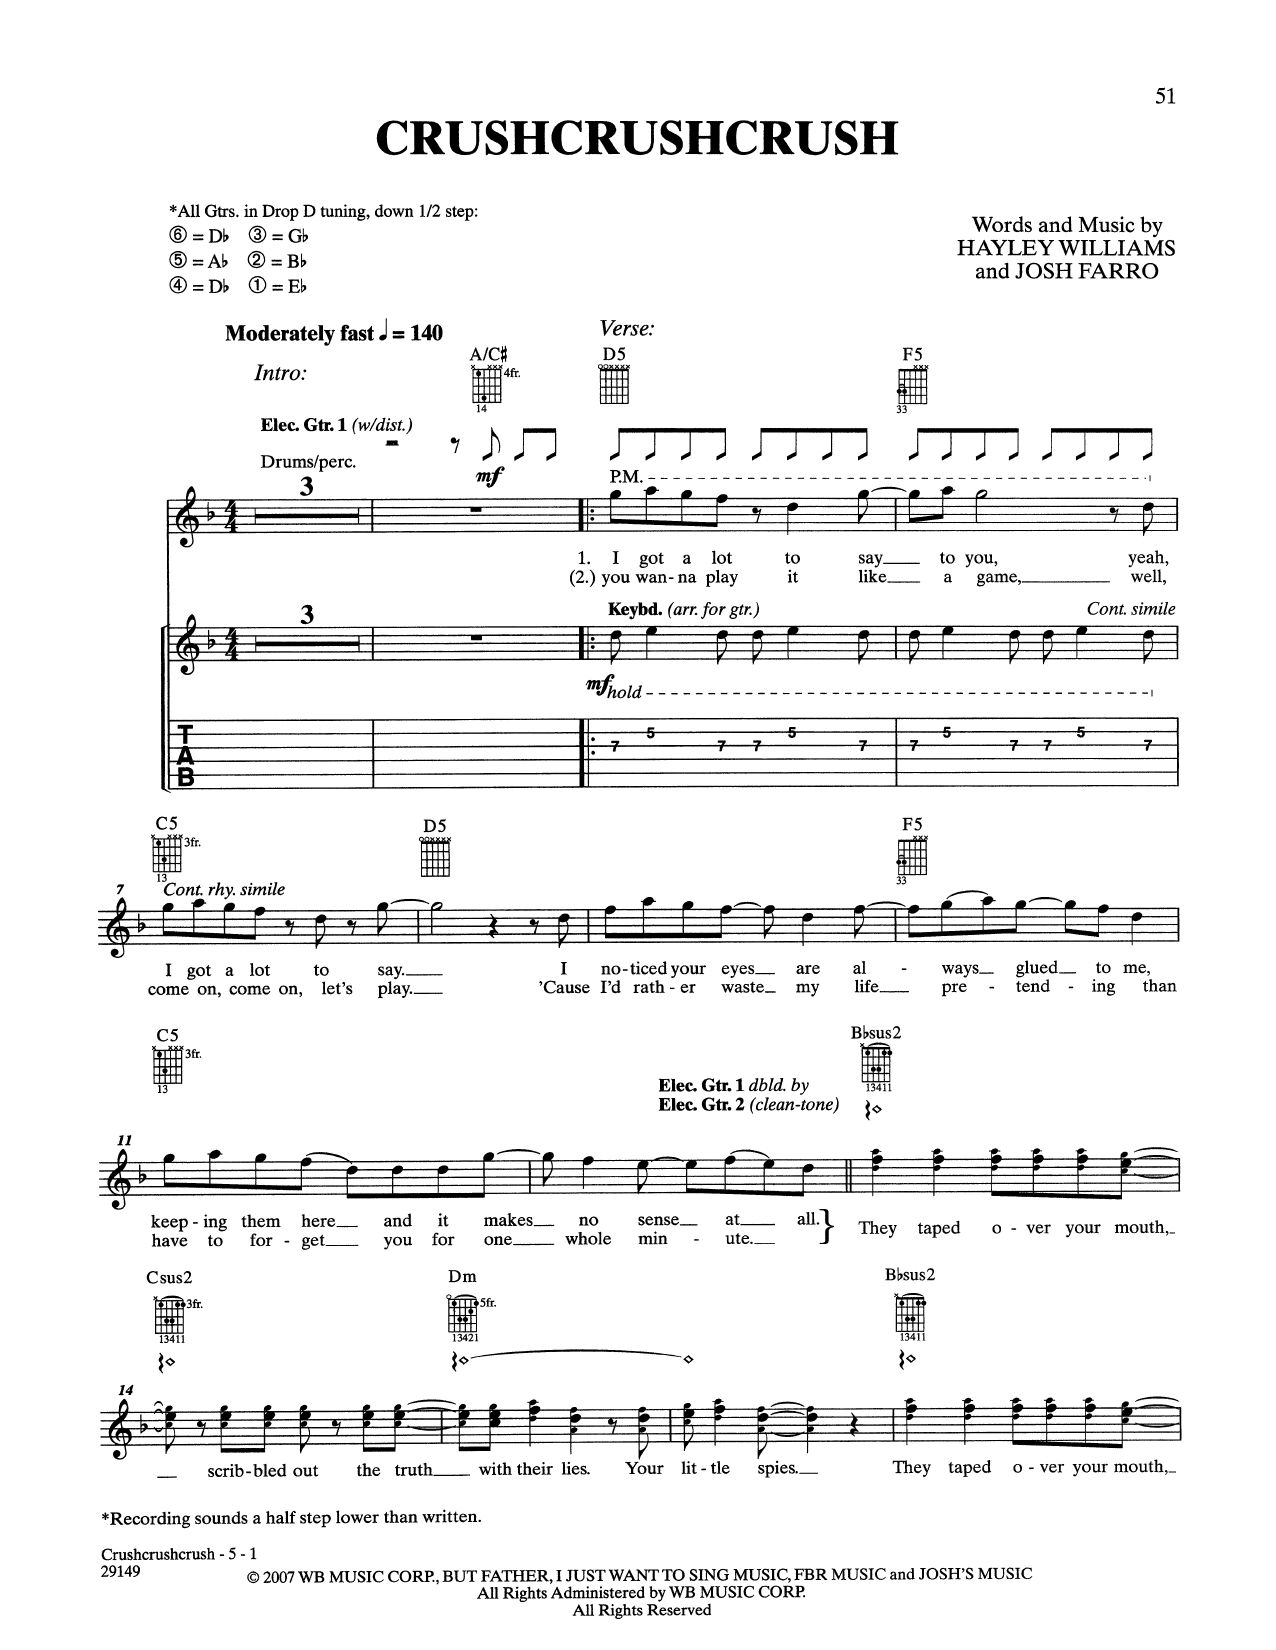 Paramore CrushCrushCrush Sheet Music Notes & Chords for Guitar Tab - Download or Print PDF